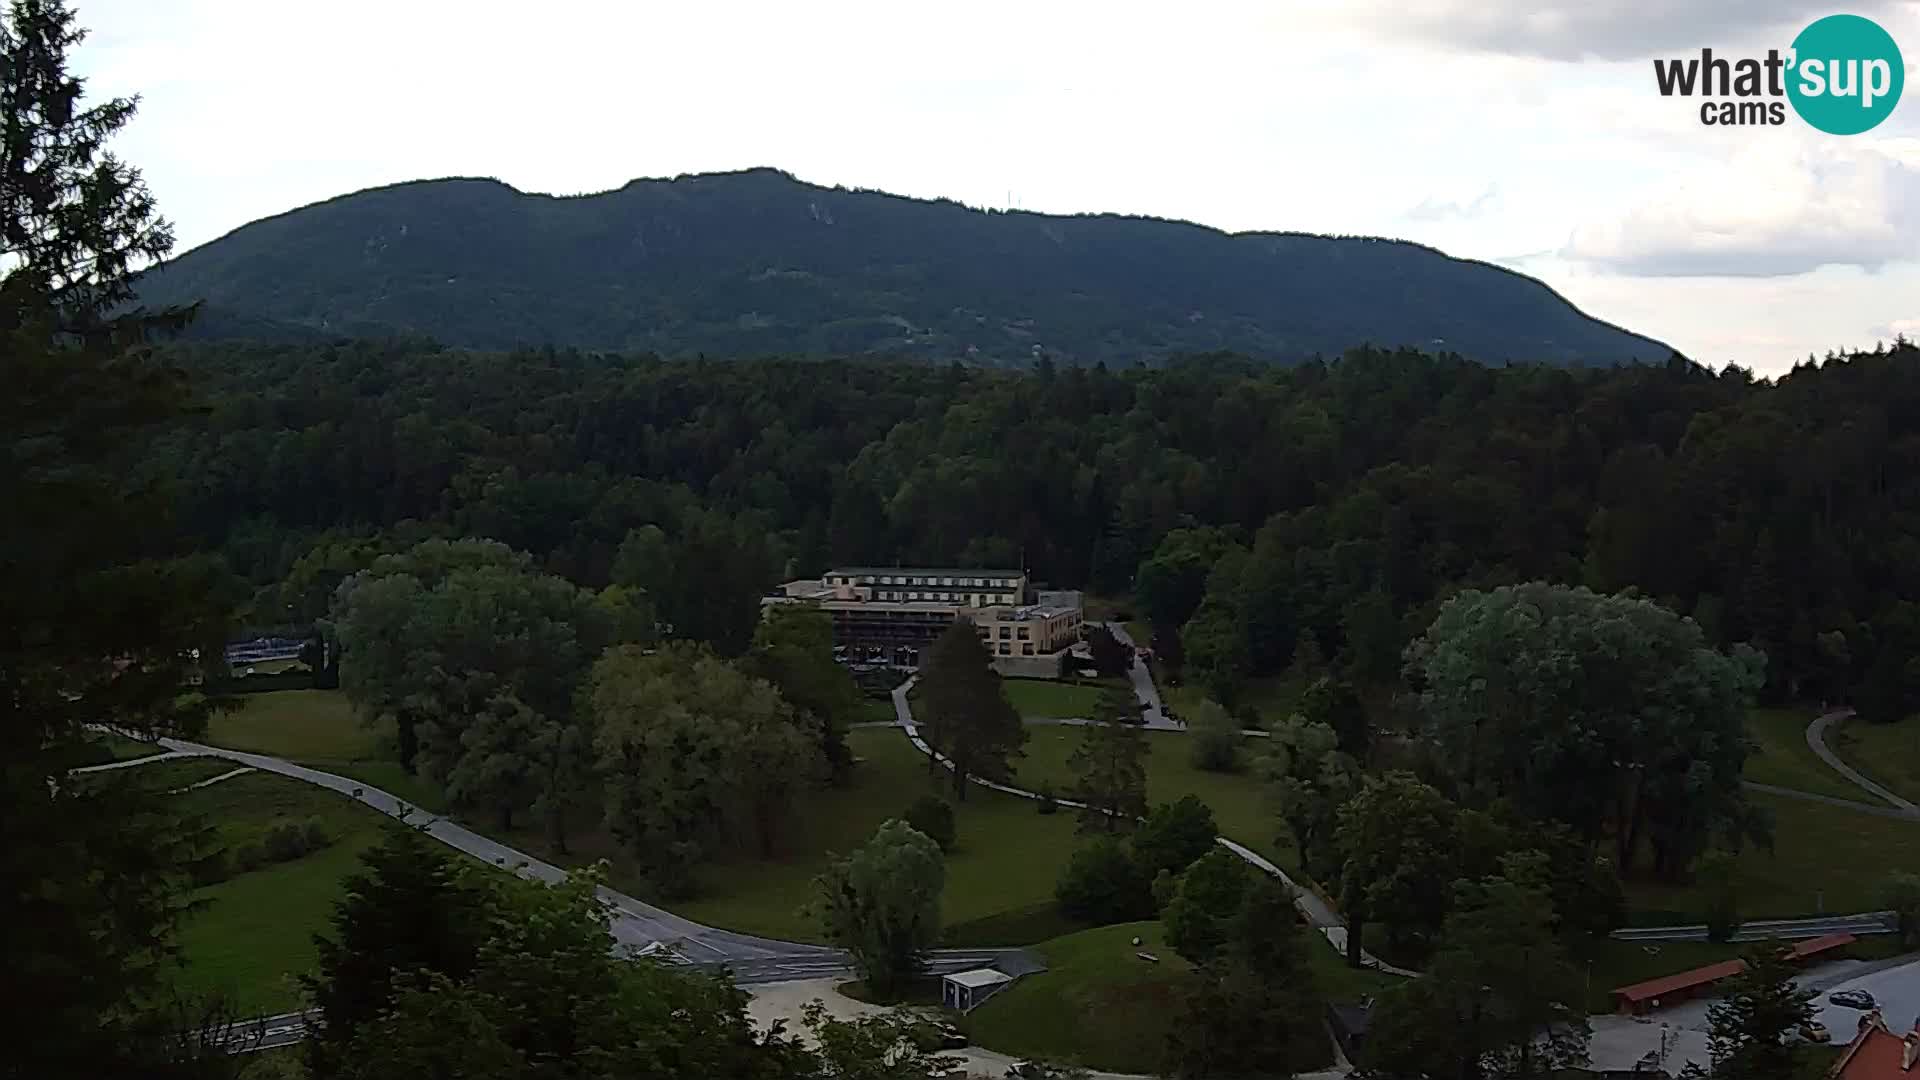 Trakošćan – view from castle